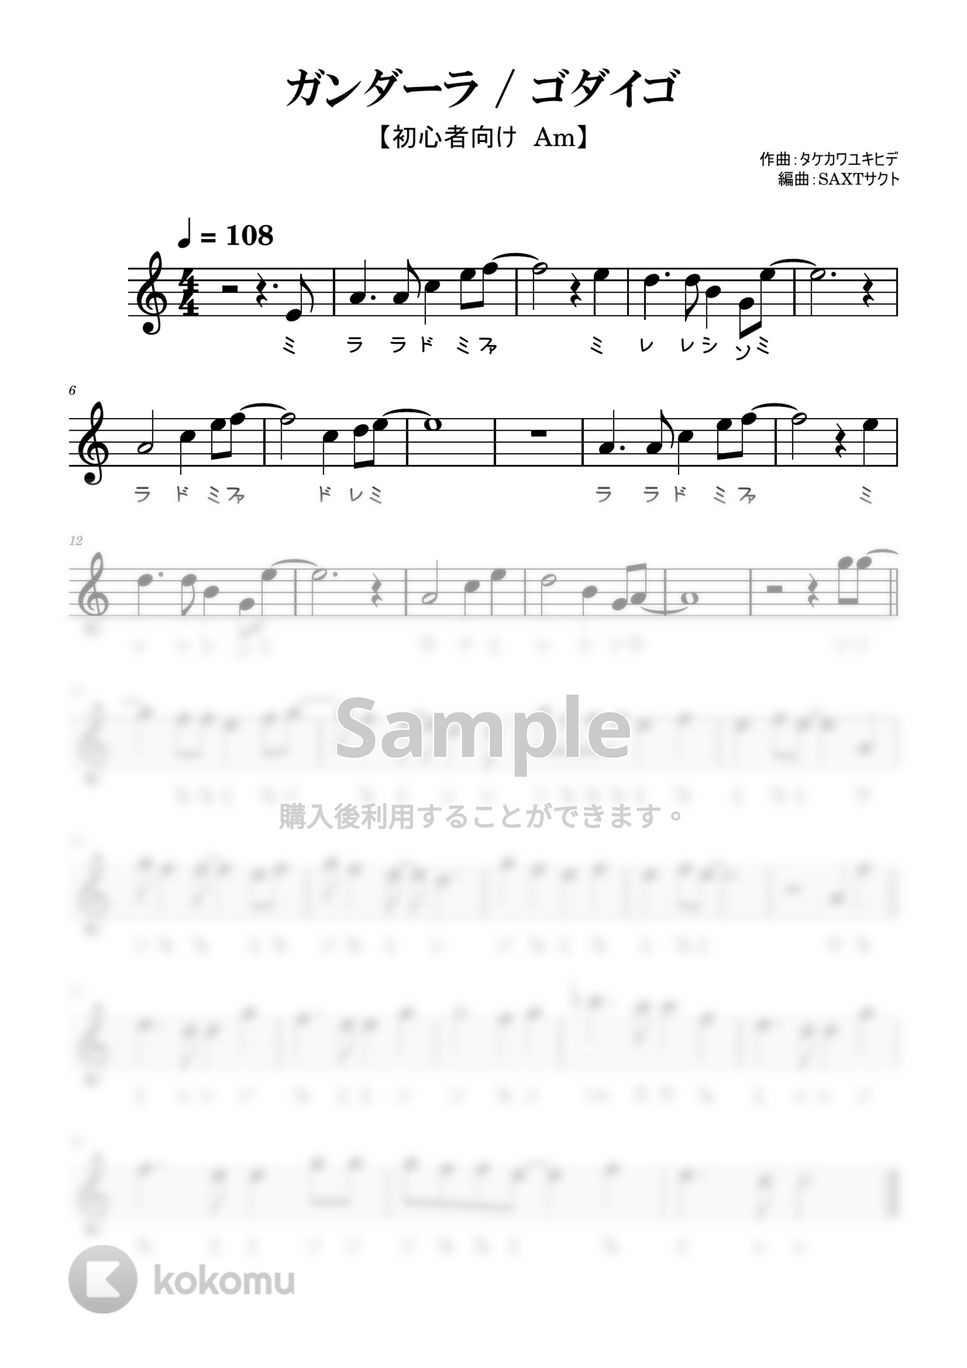 ゴダイゴ - ガンダーラ (めちゃラク譜) by SAXTサクト